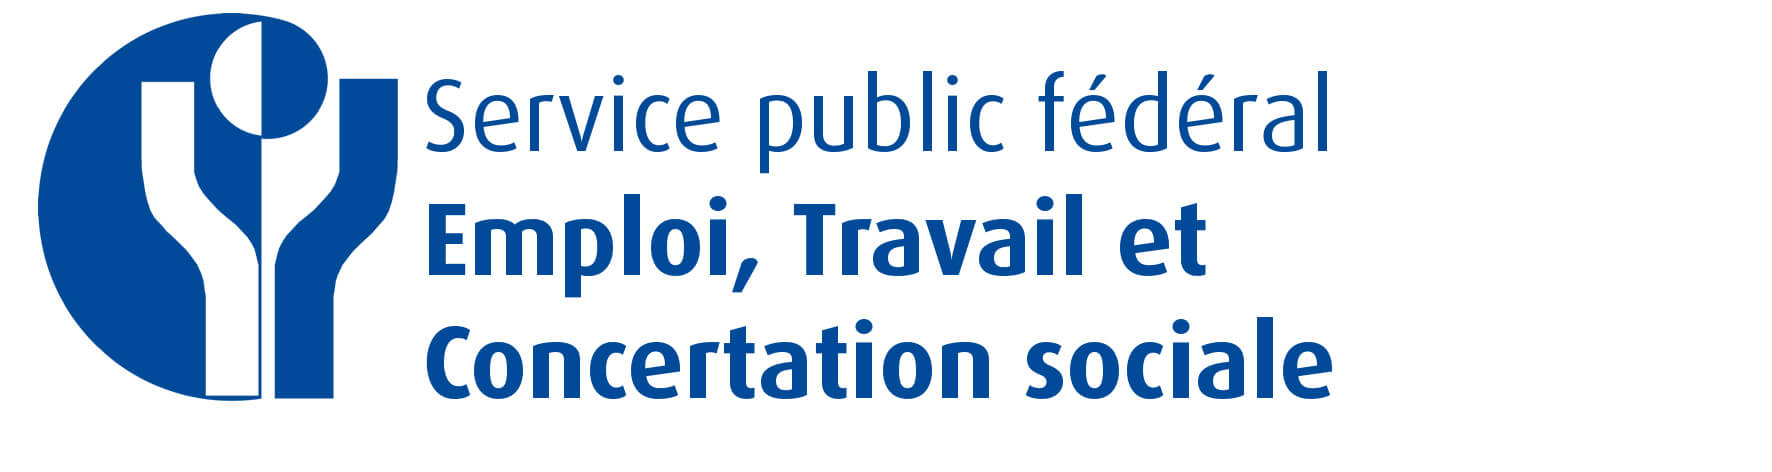 Logo représentant le service public fédéral